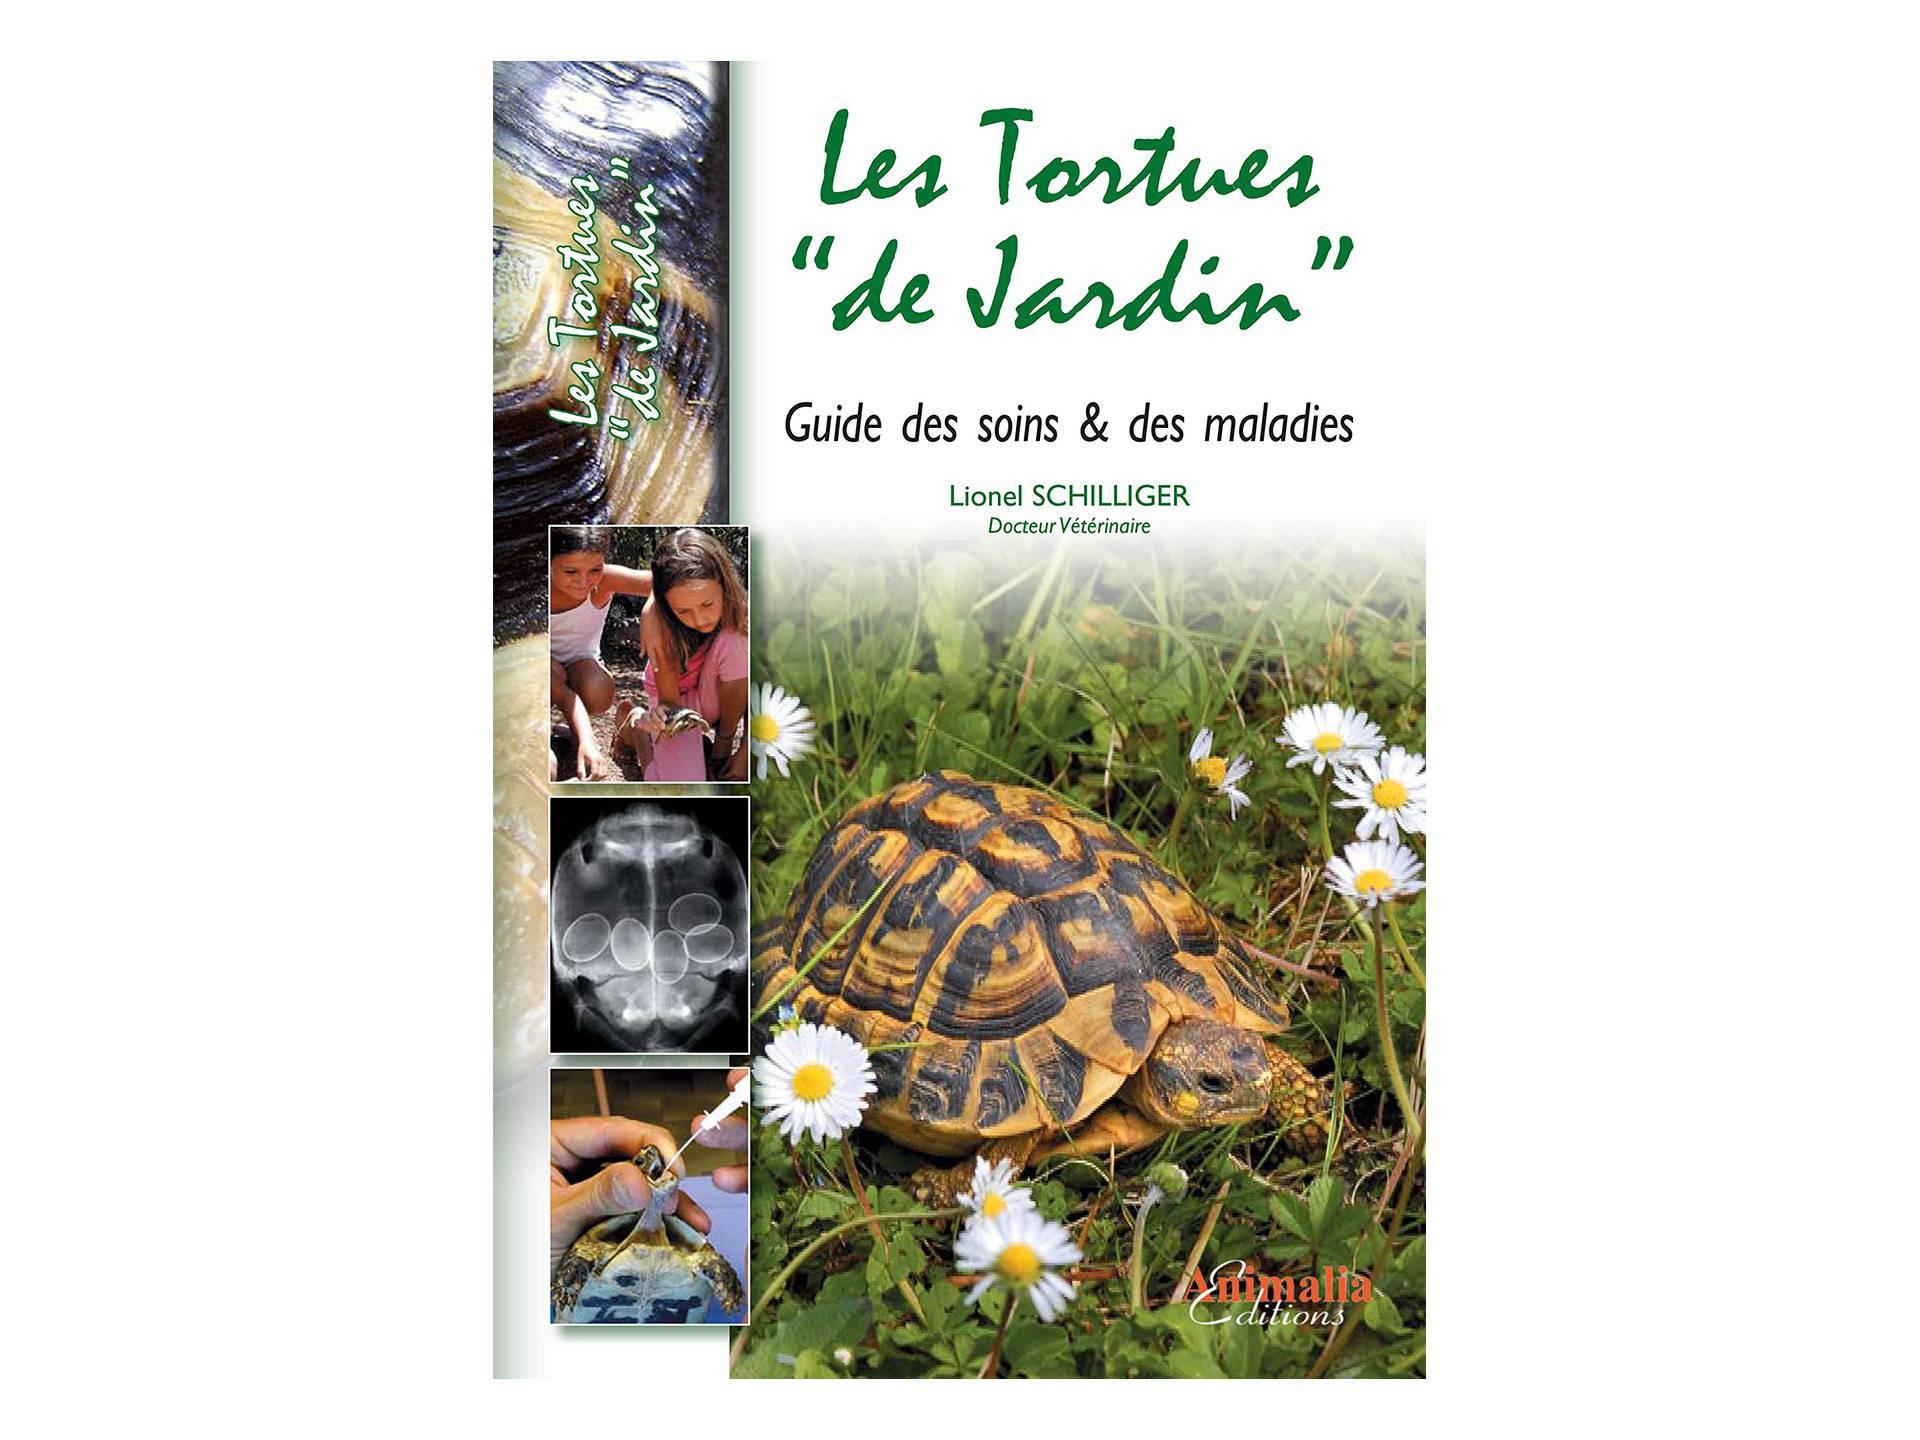 Livre Les tortues de jardin Soins et Maladies Lionel Schilliger deuxième